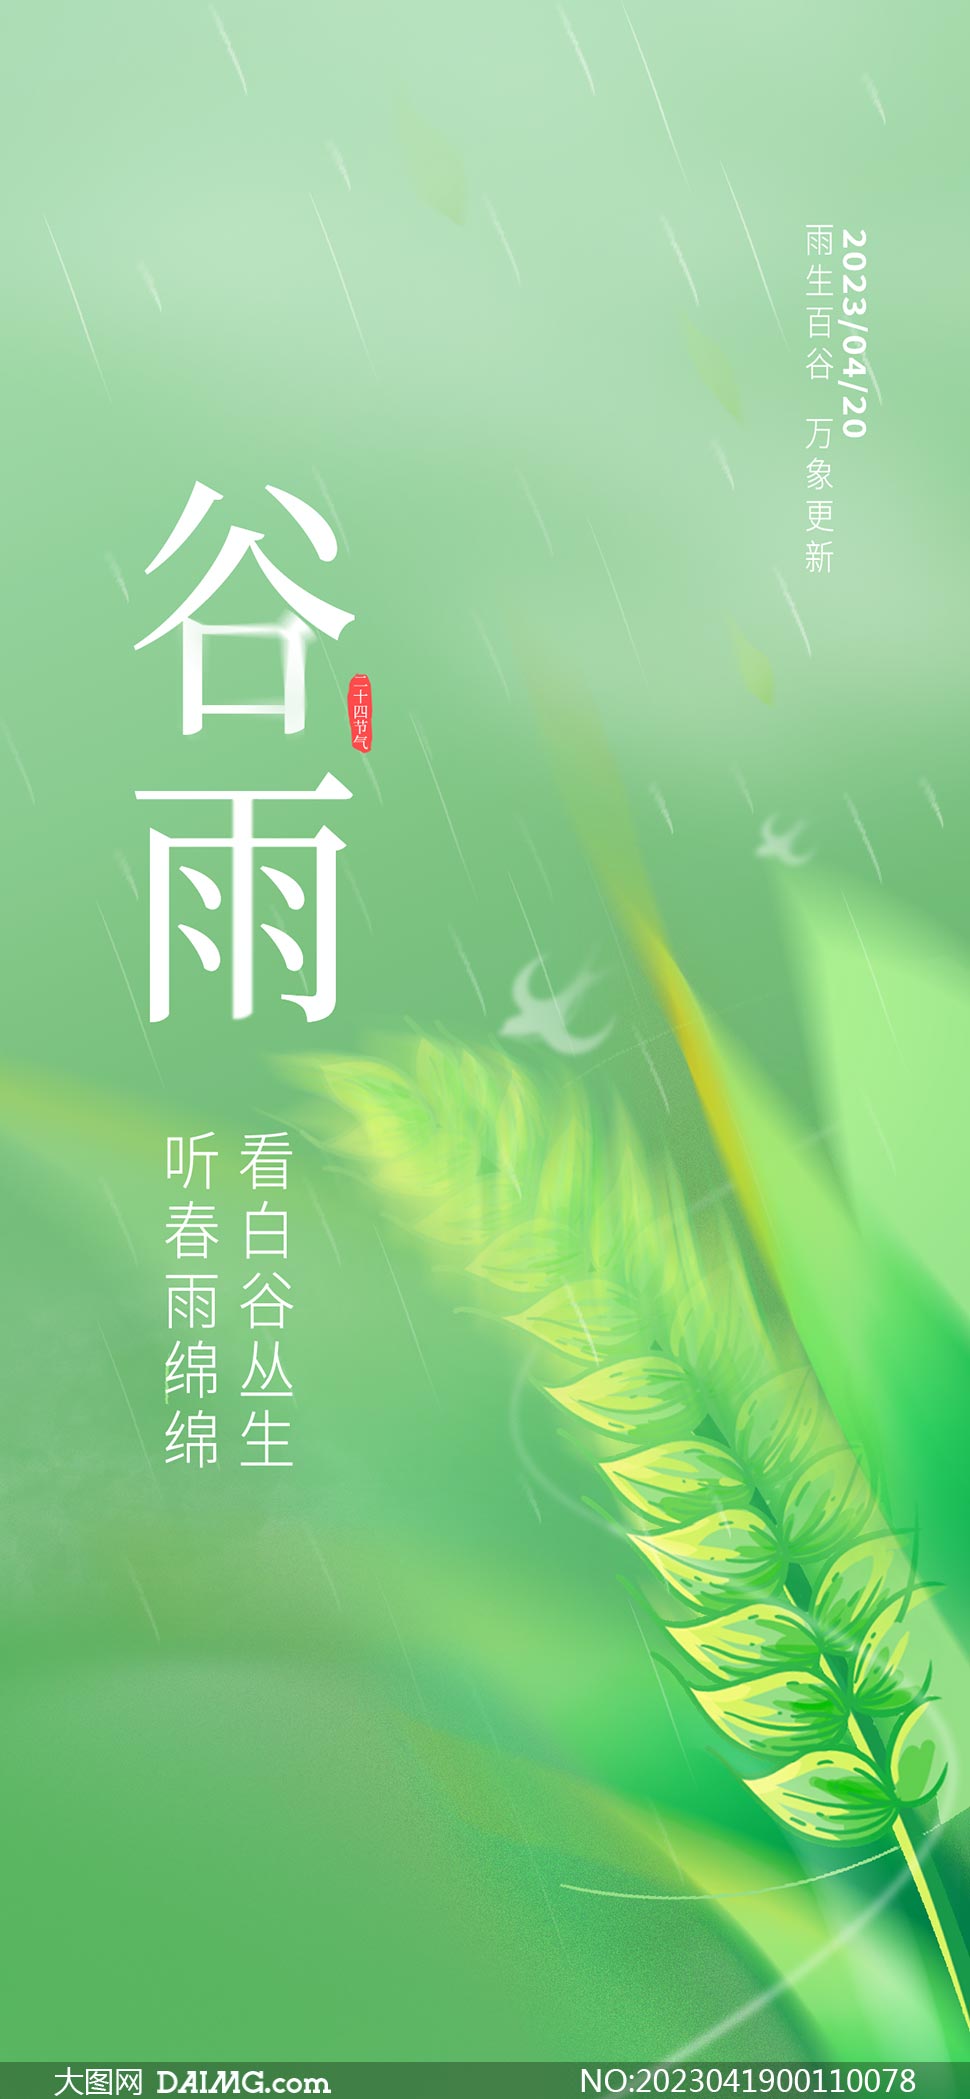 绿色麦穗主题谷雨节气手机端海报PSD素材